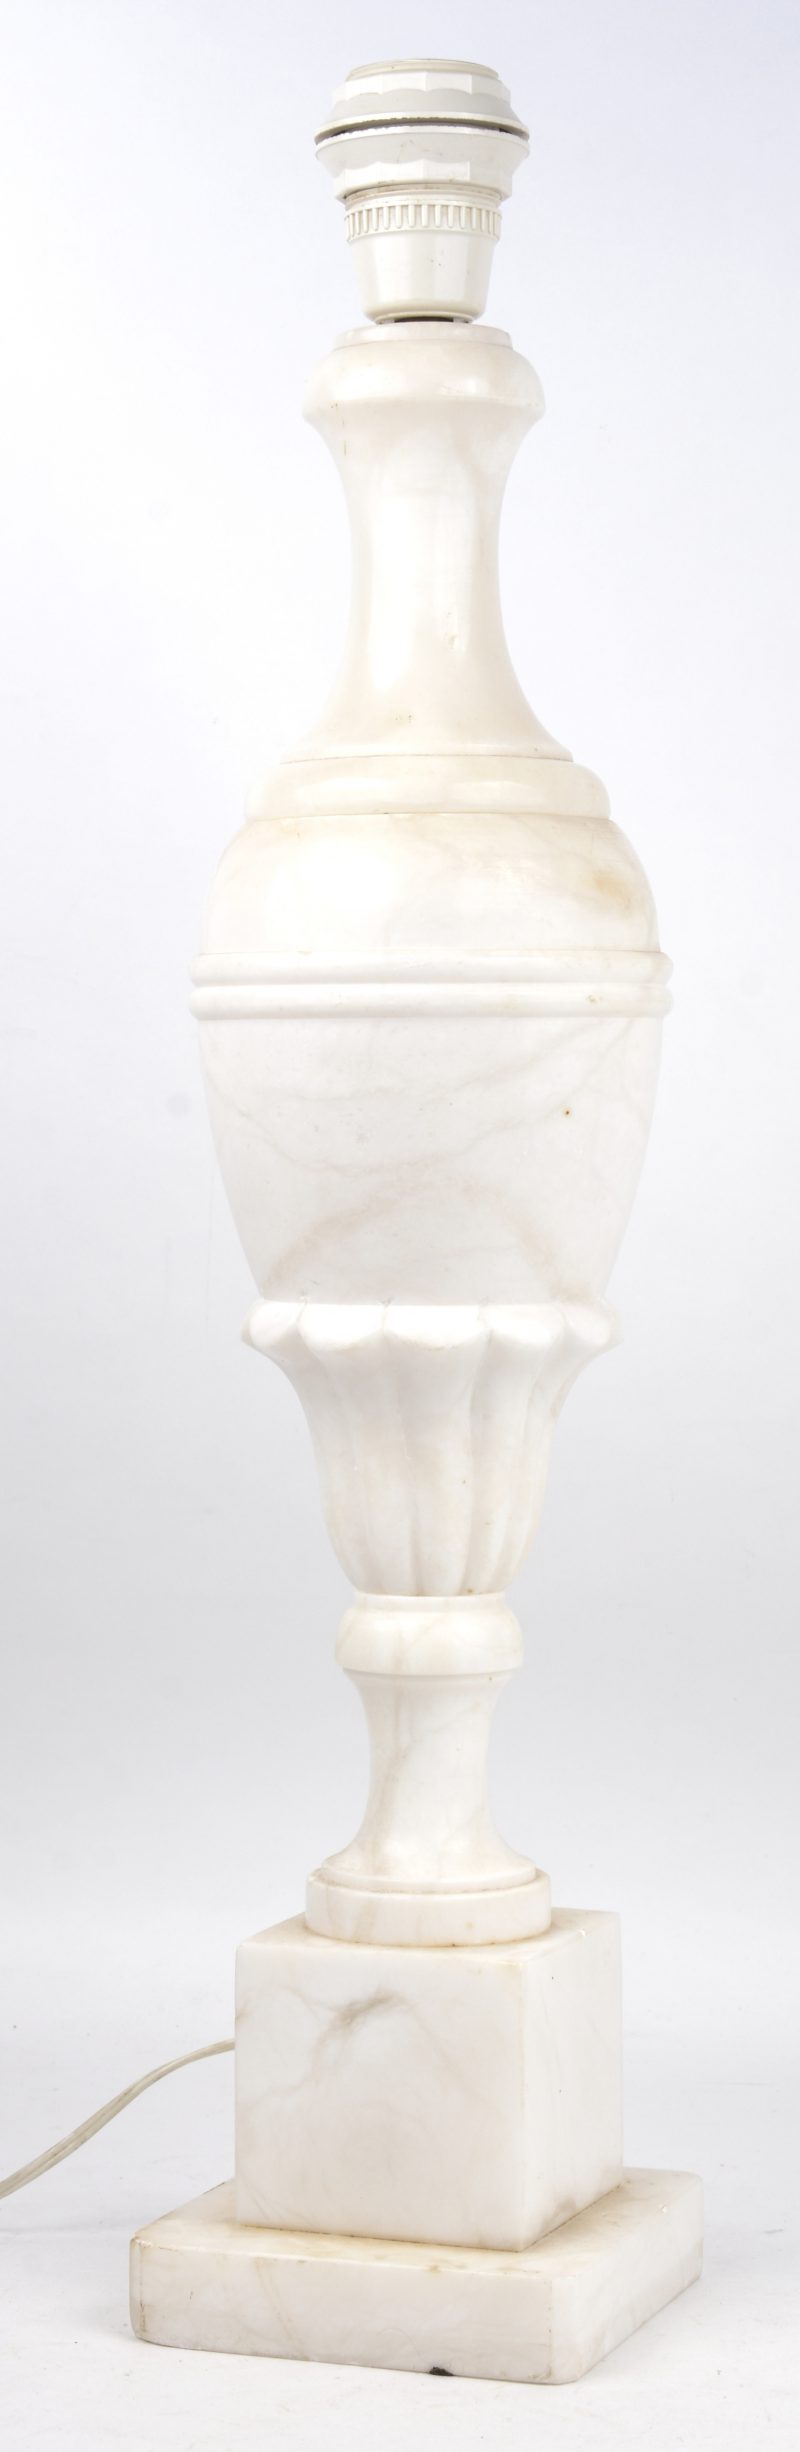 Een albasten lampvoet.